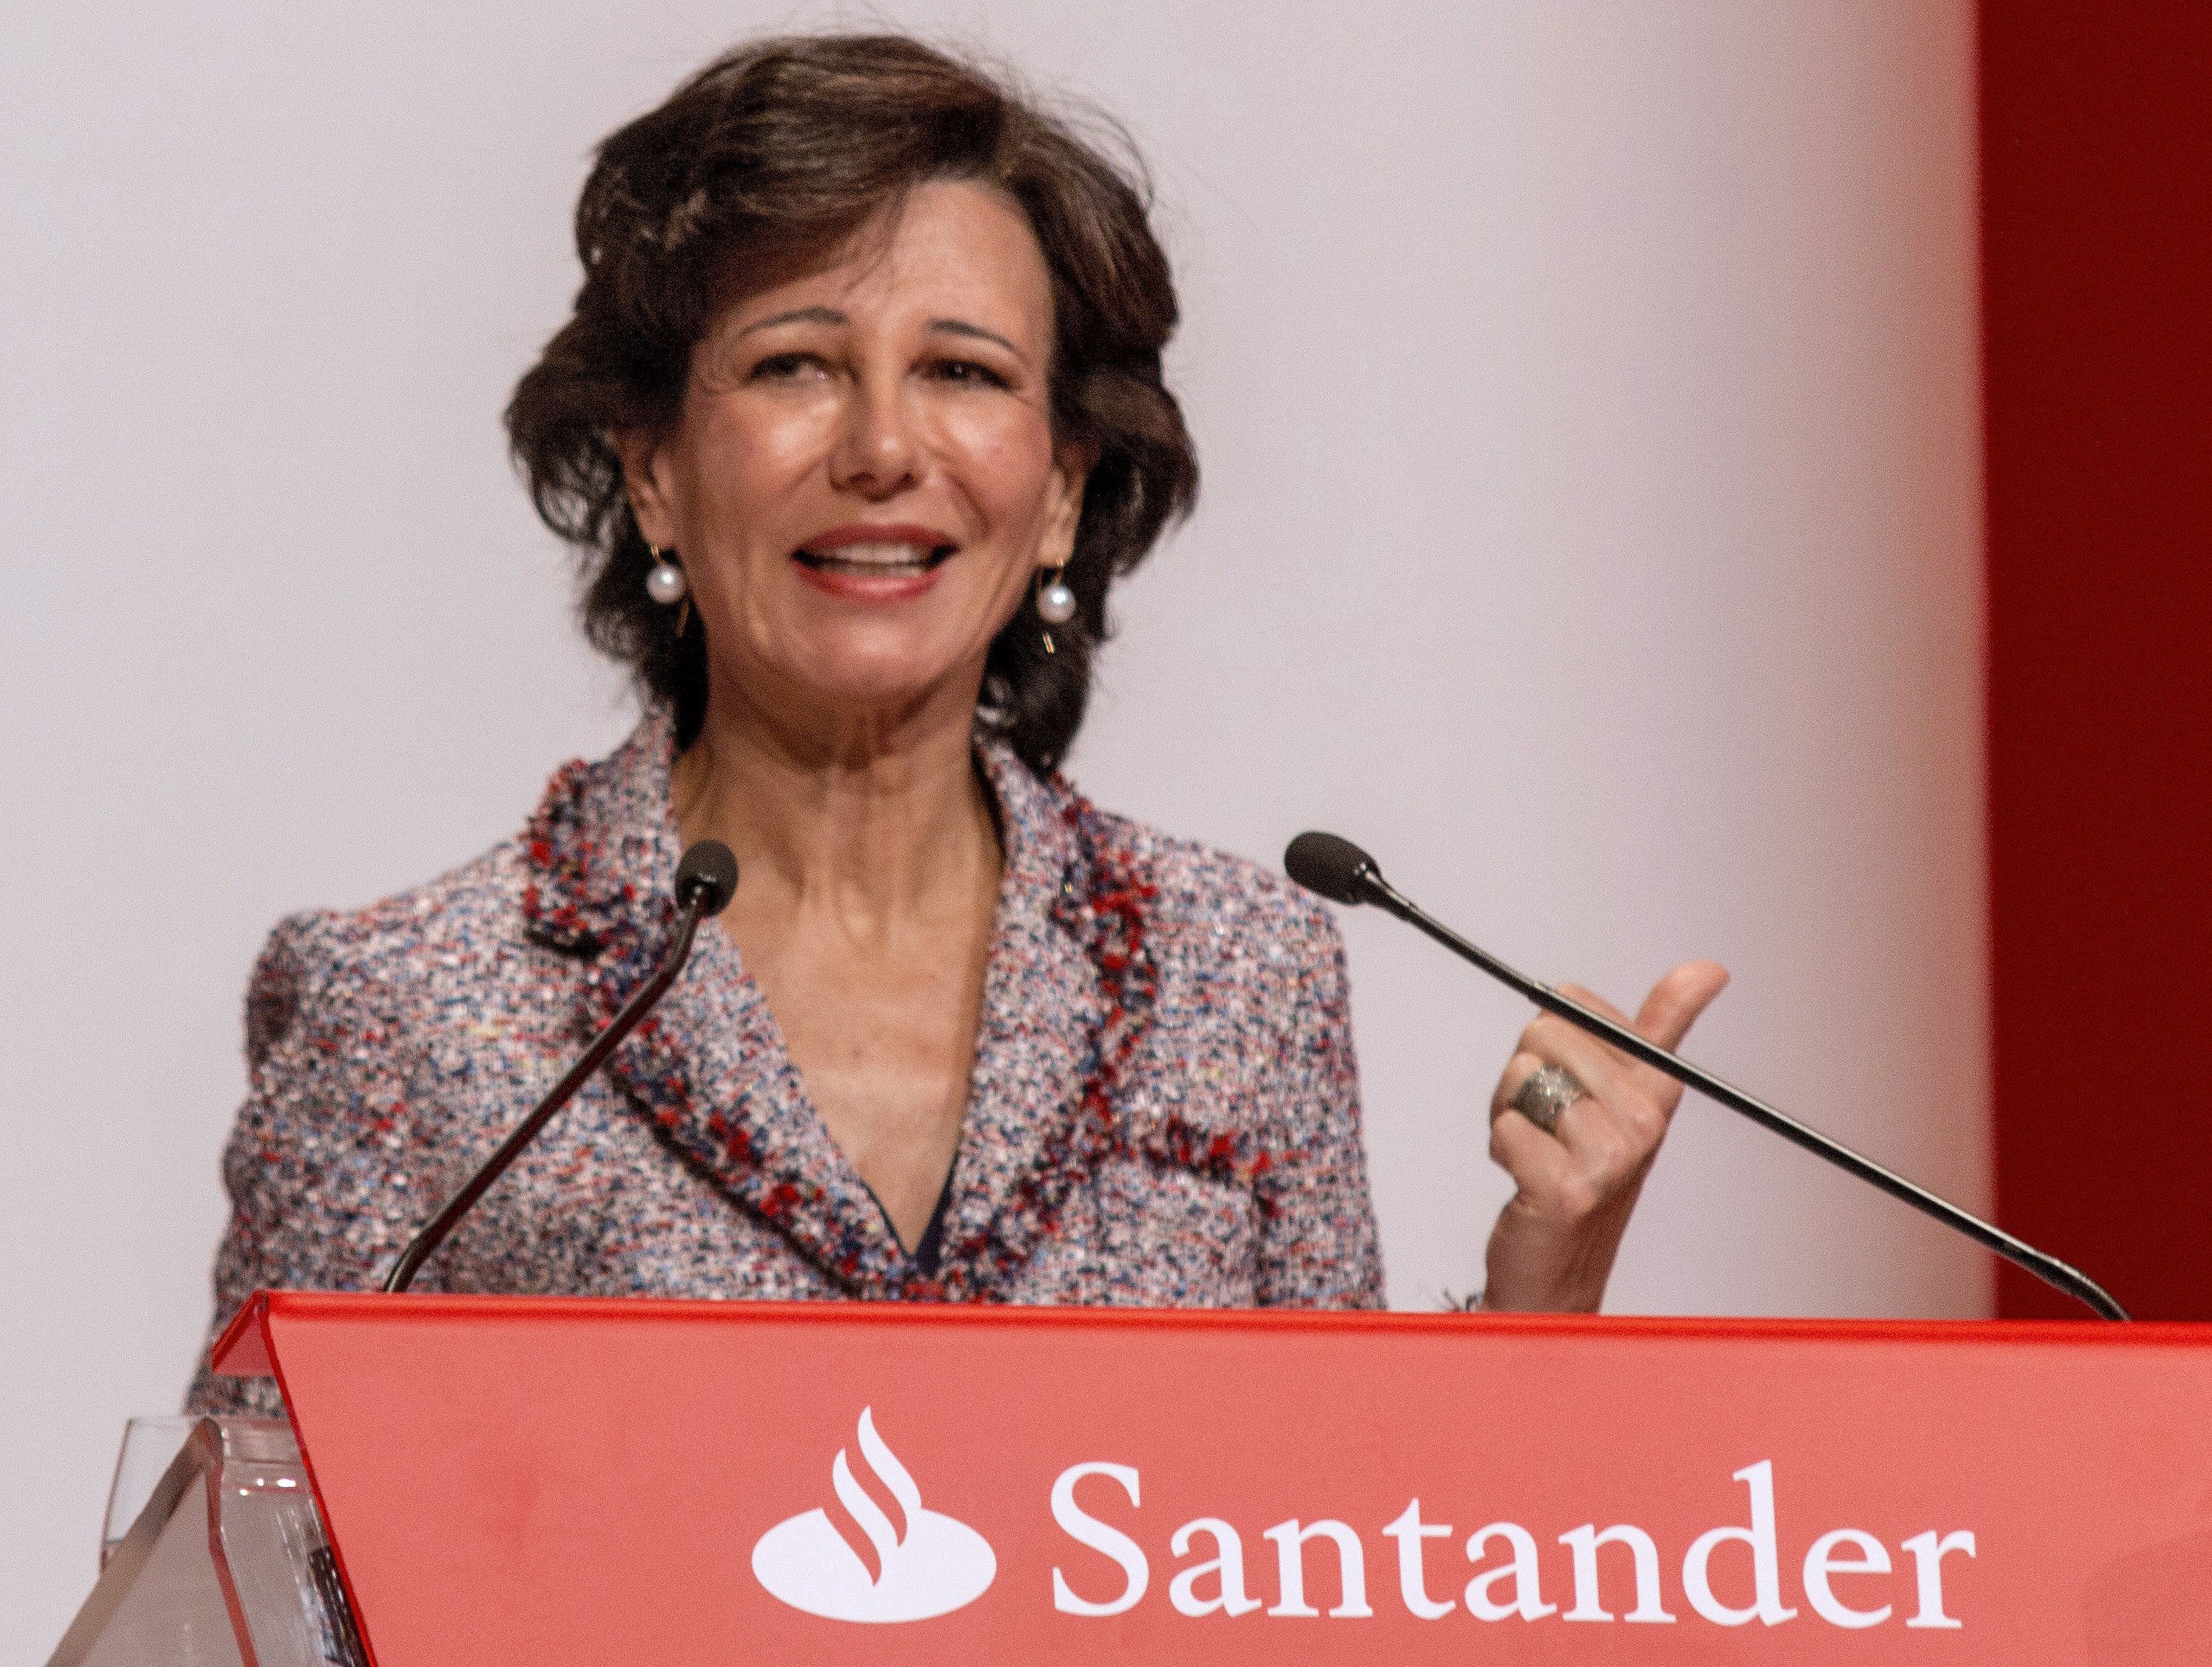 Santander guanya 1.867 milions i creix a Llatinoamèrica i Espanya